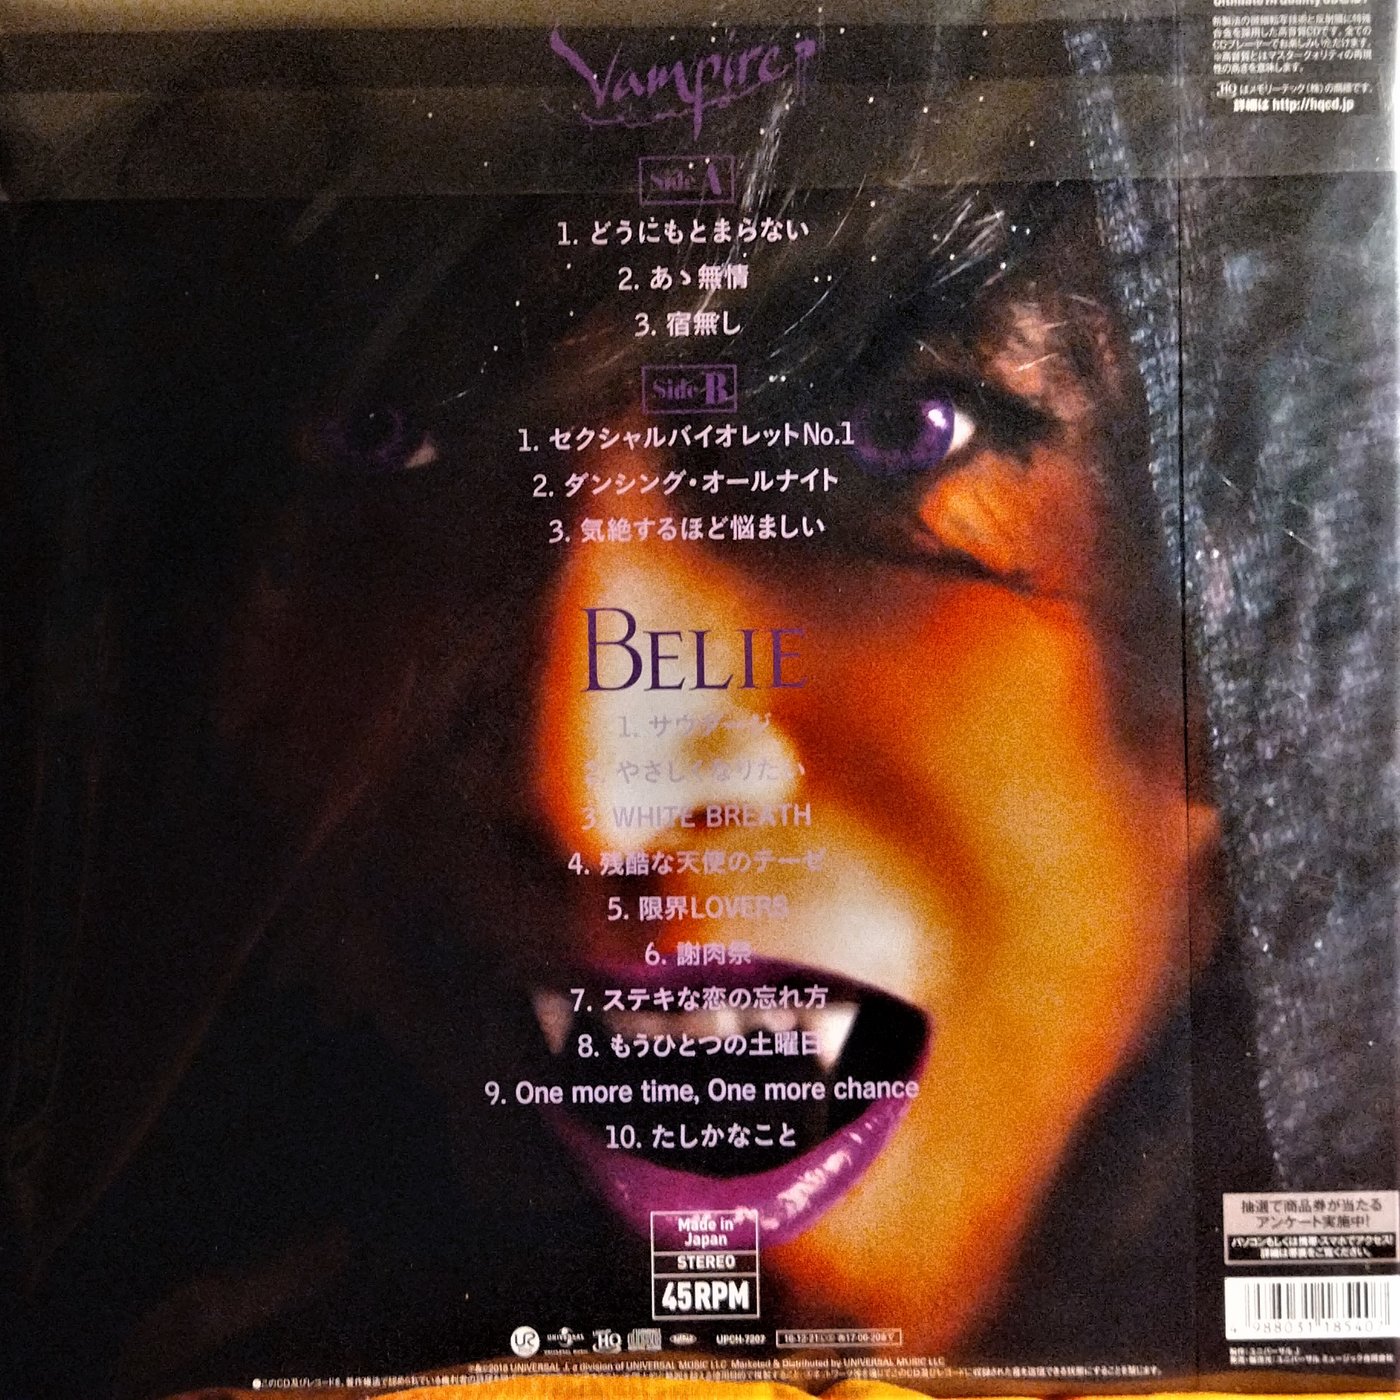 Belie+Vampire - 邦楽